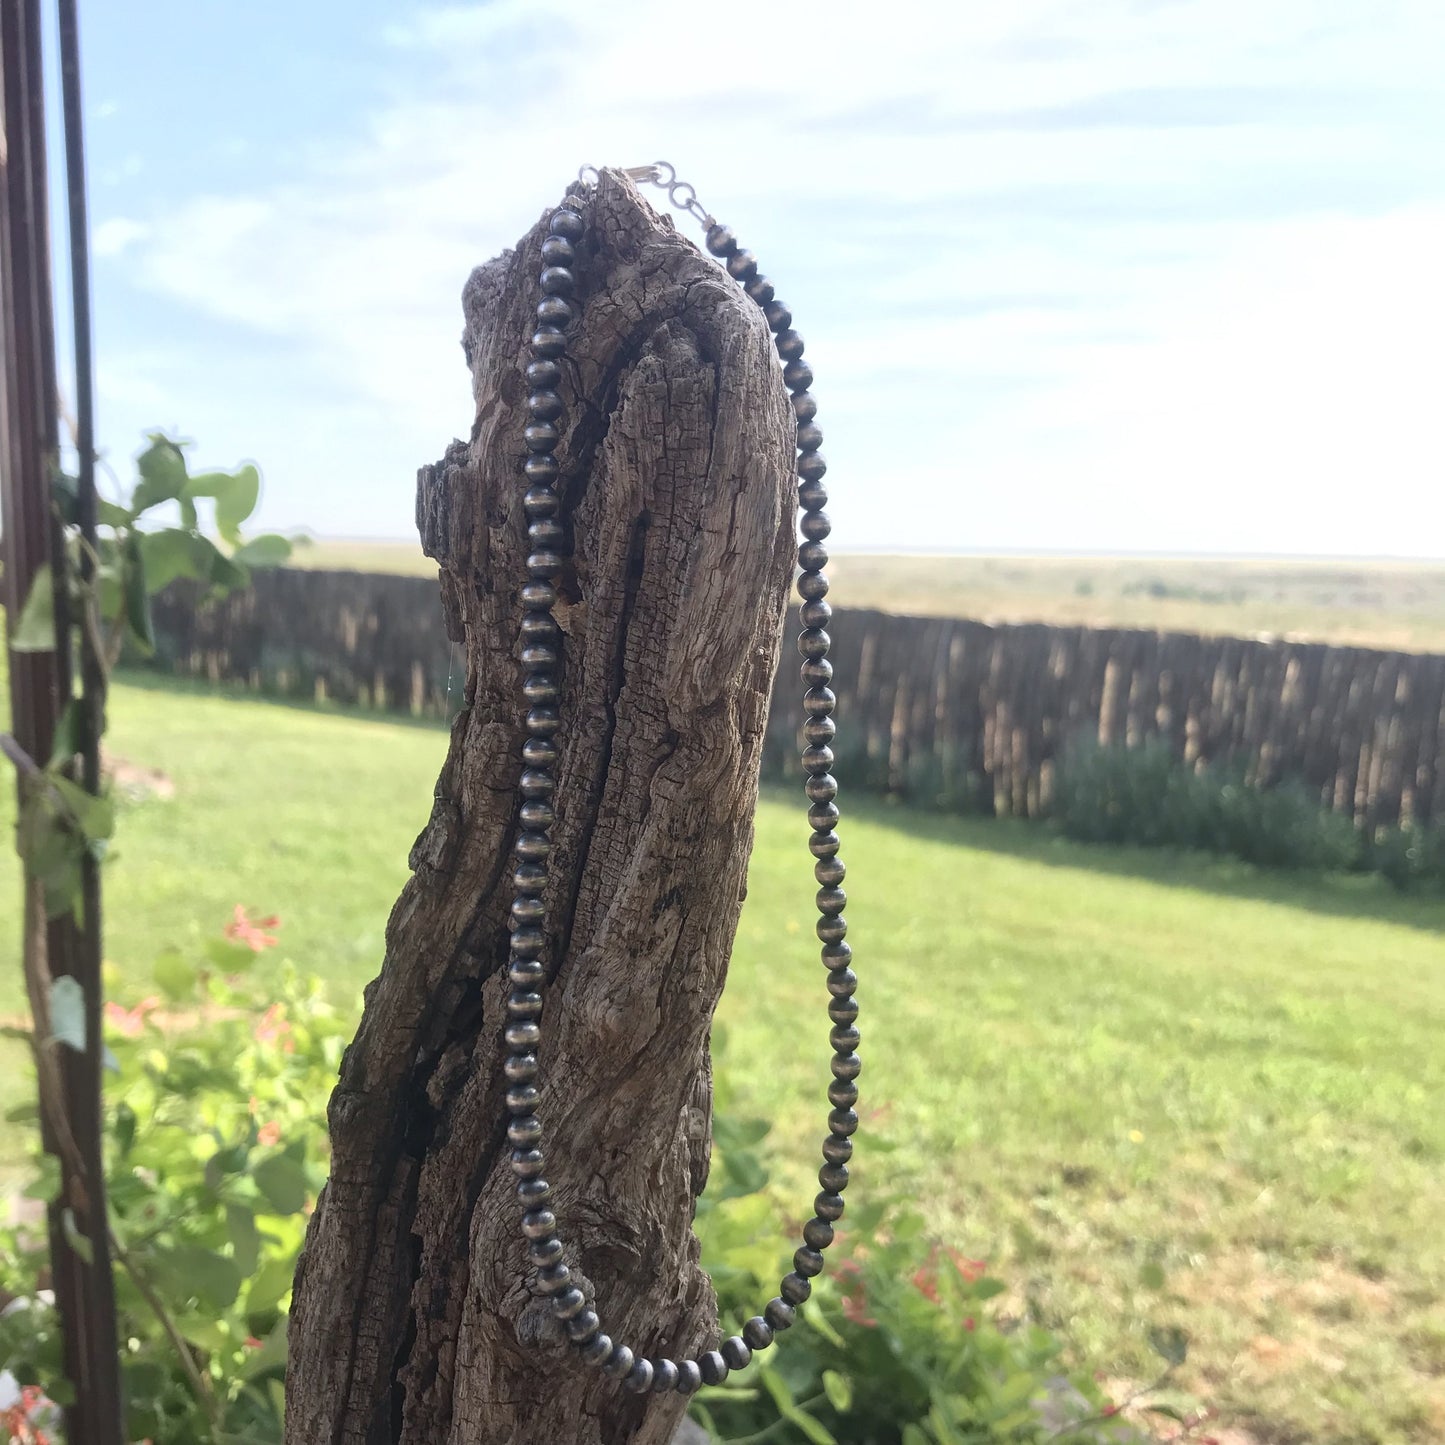 5mm Navajo Pearl Necklace